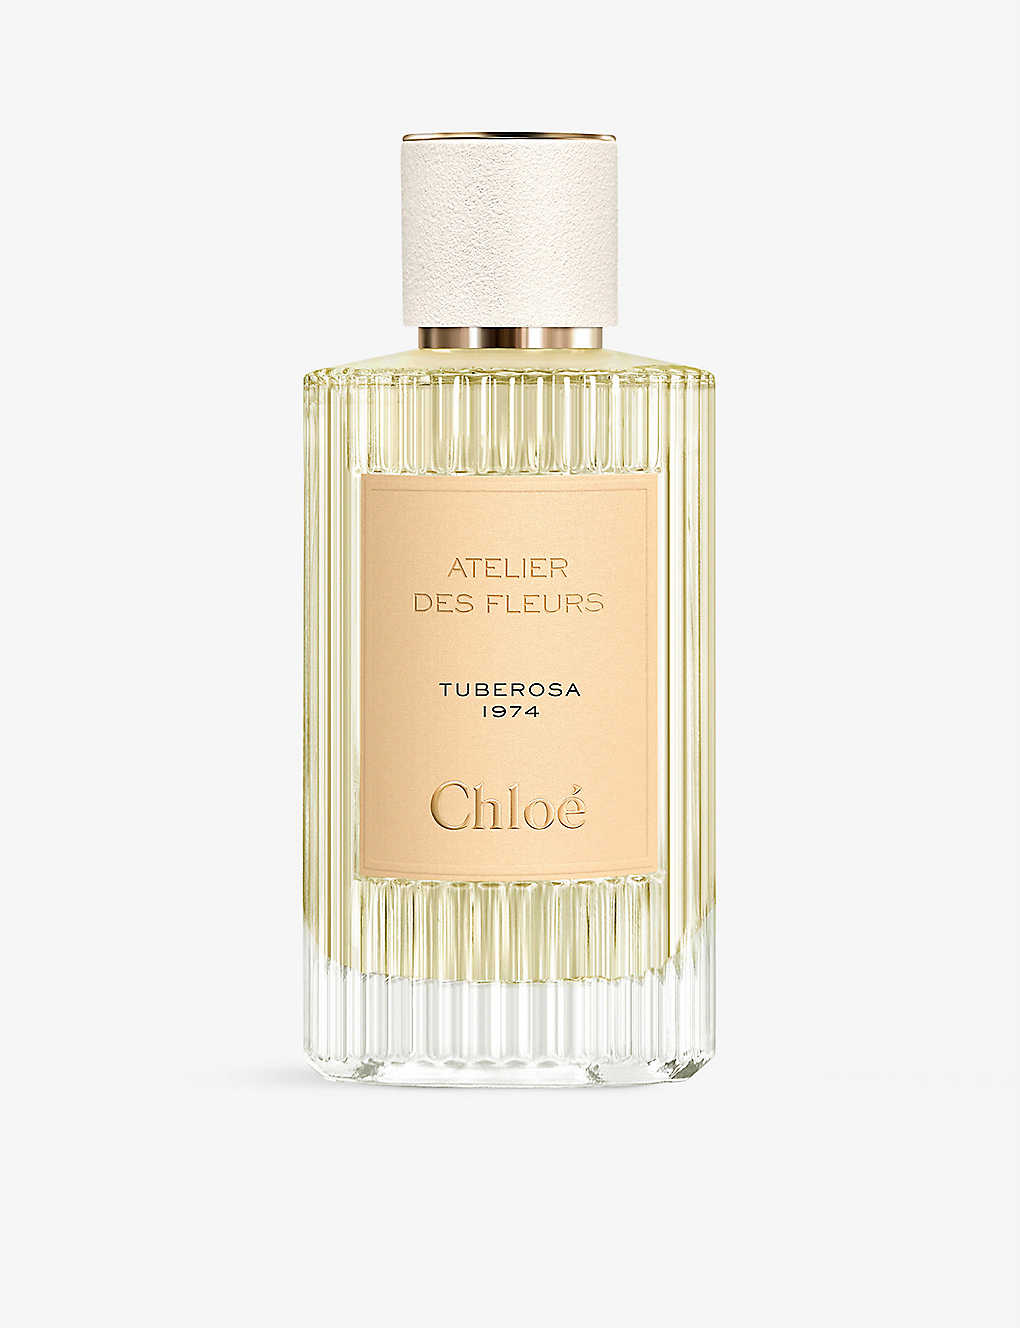 Chloé Atelier Des Fleurs Tuberosa 1974 Eau De Parfum 150ml